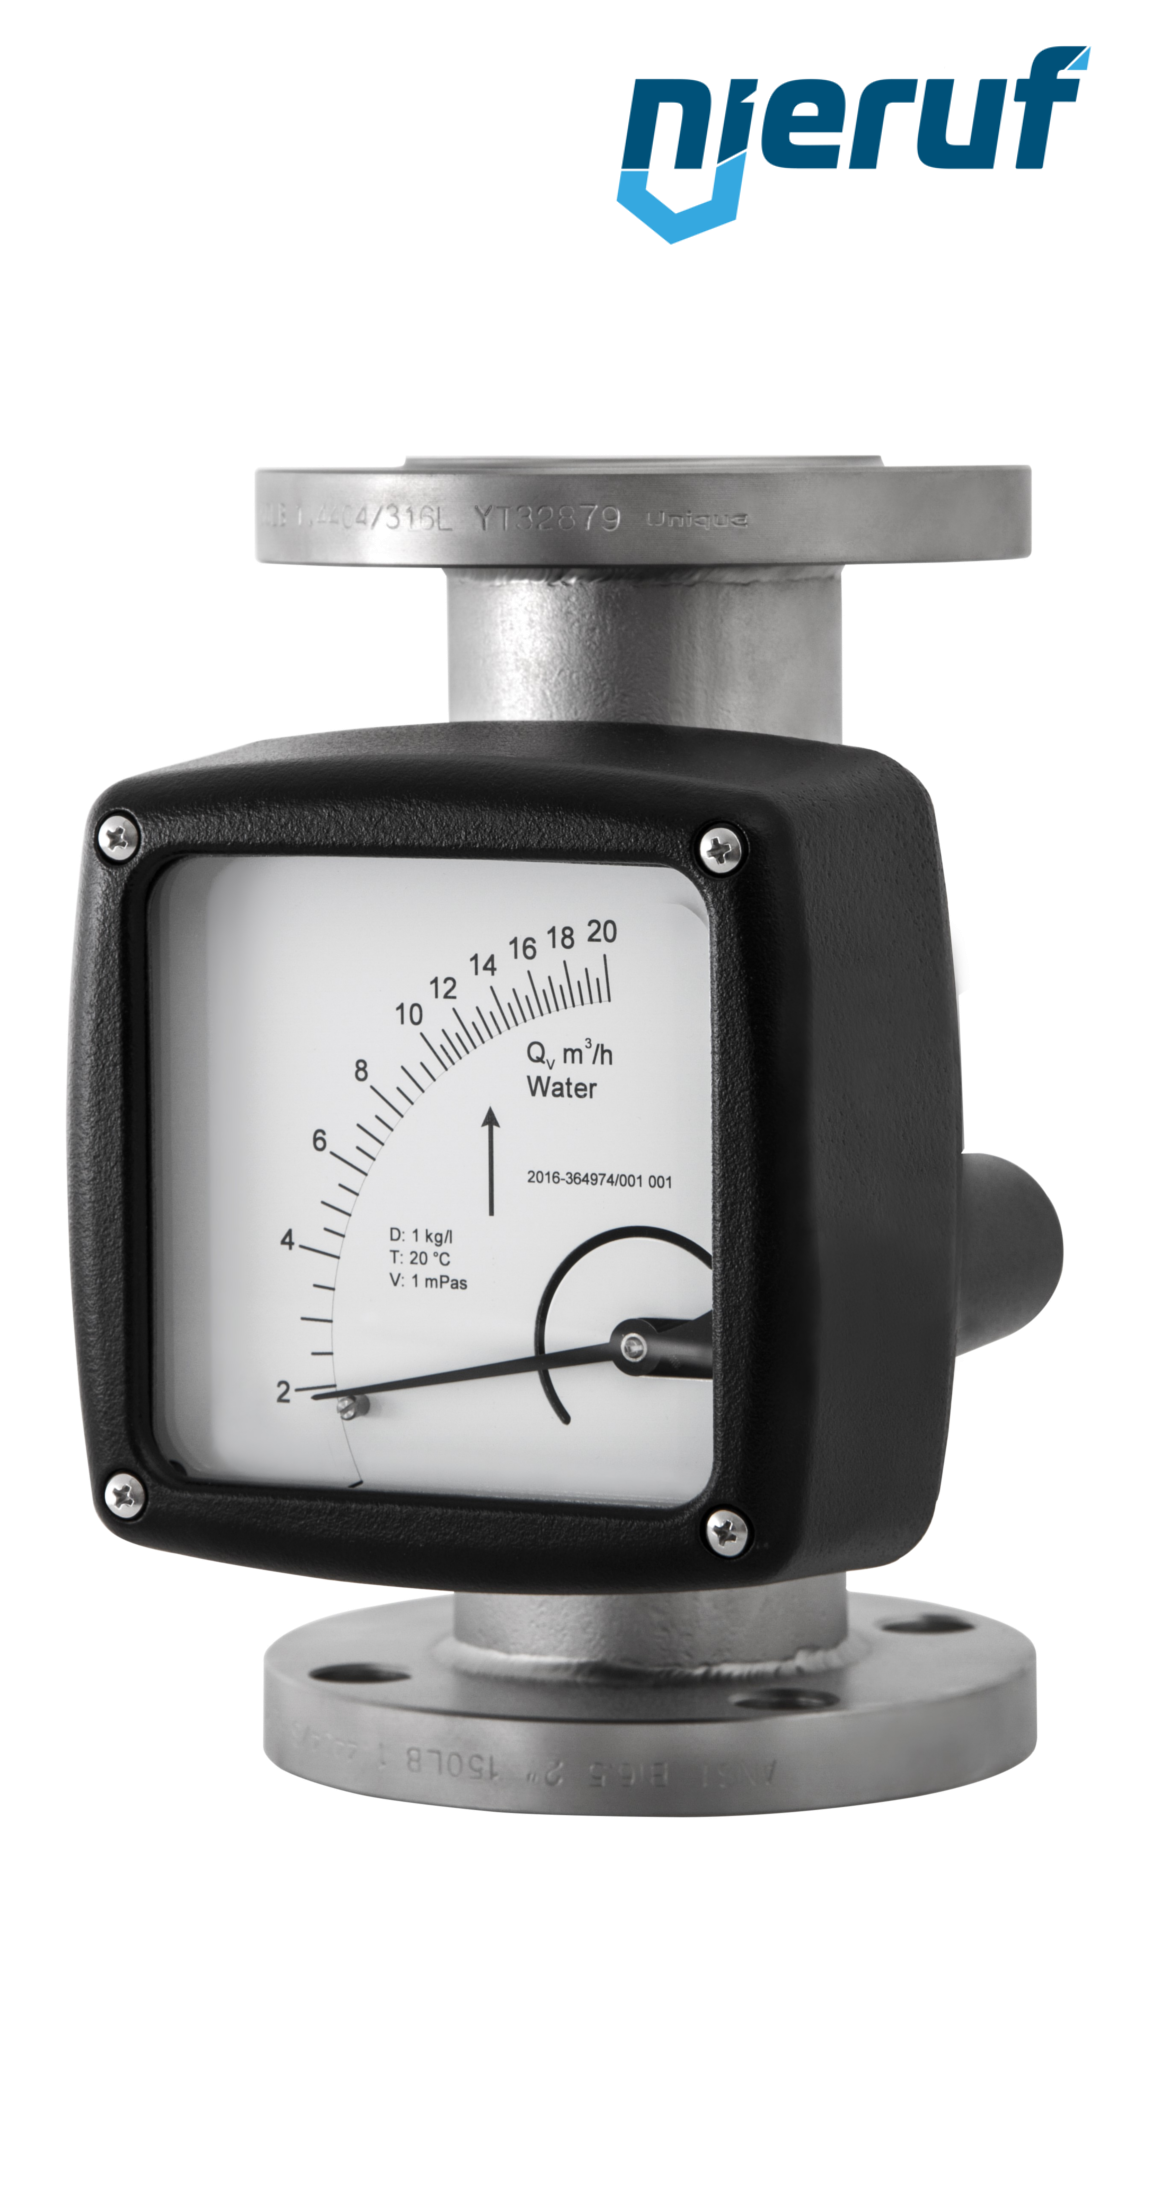 misuratore di portata / flussometro flangiato DN20-attacco 0,03 - 0,30 m3/h tubo DN15 aria